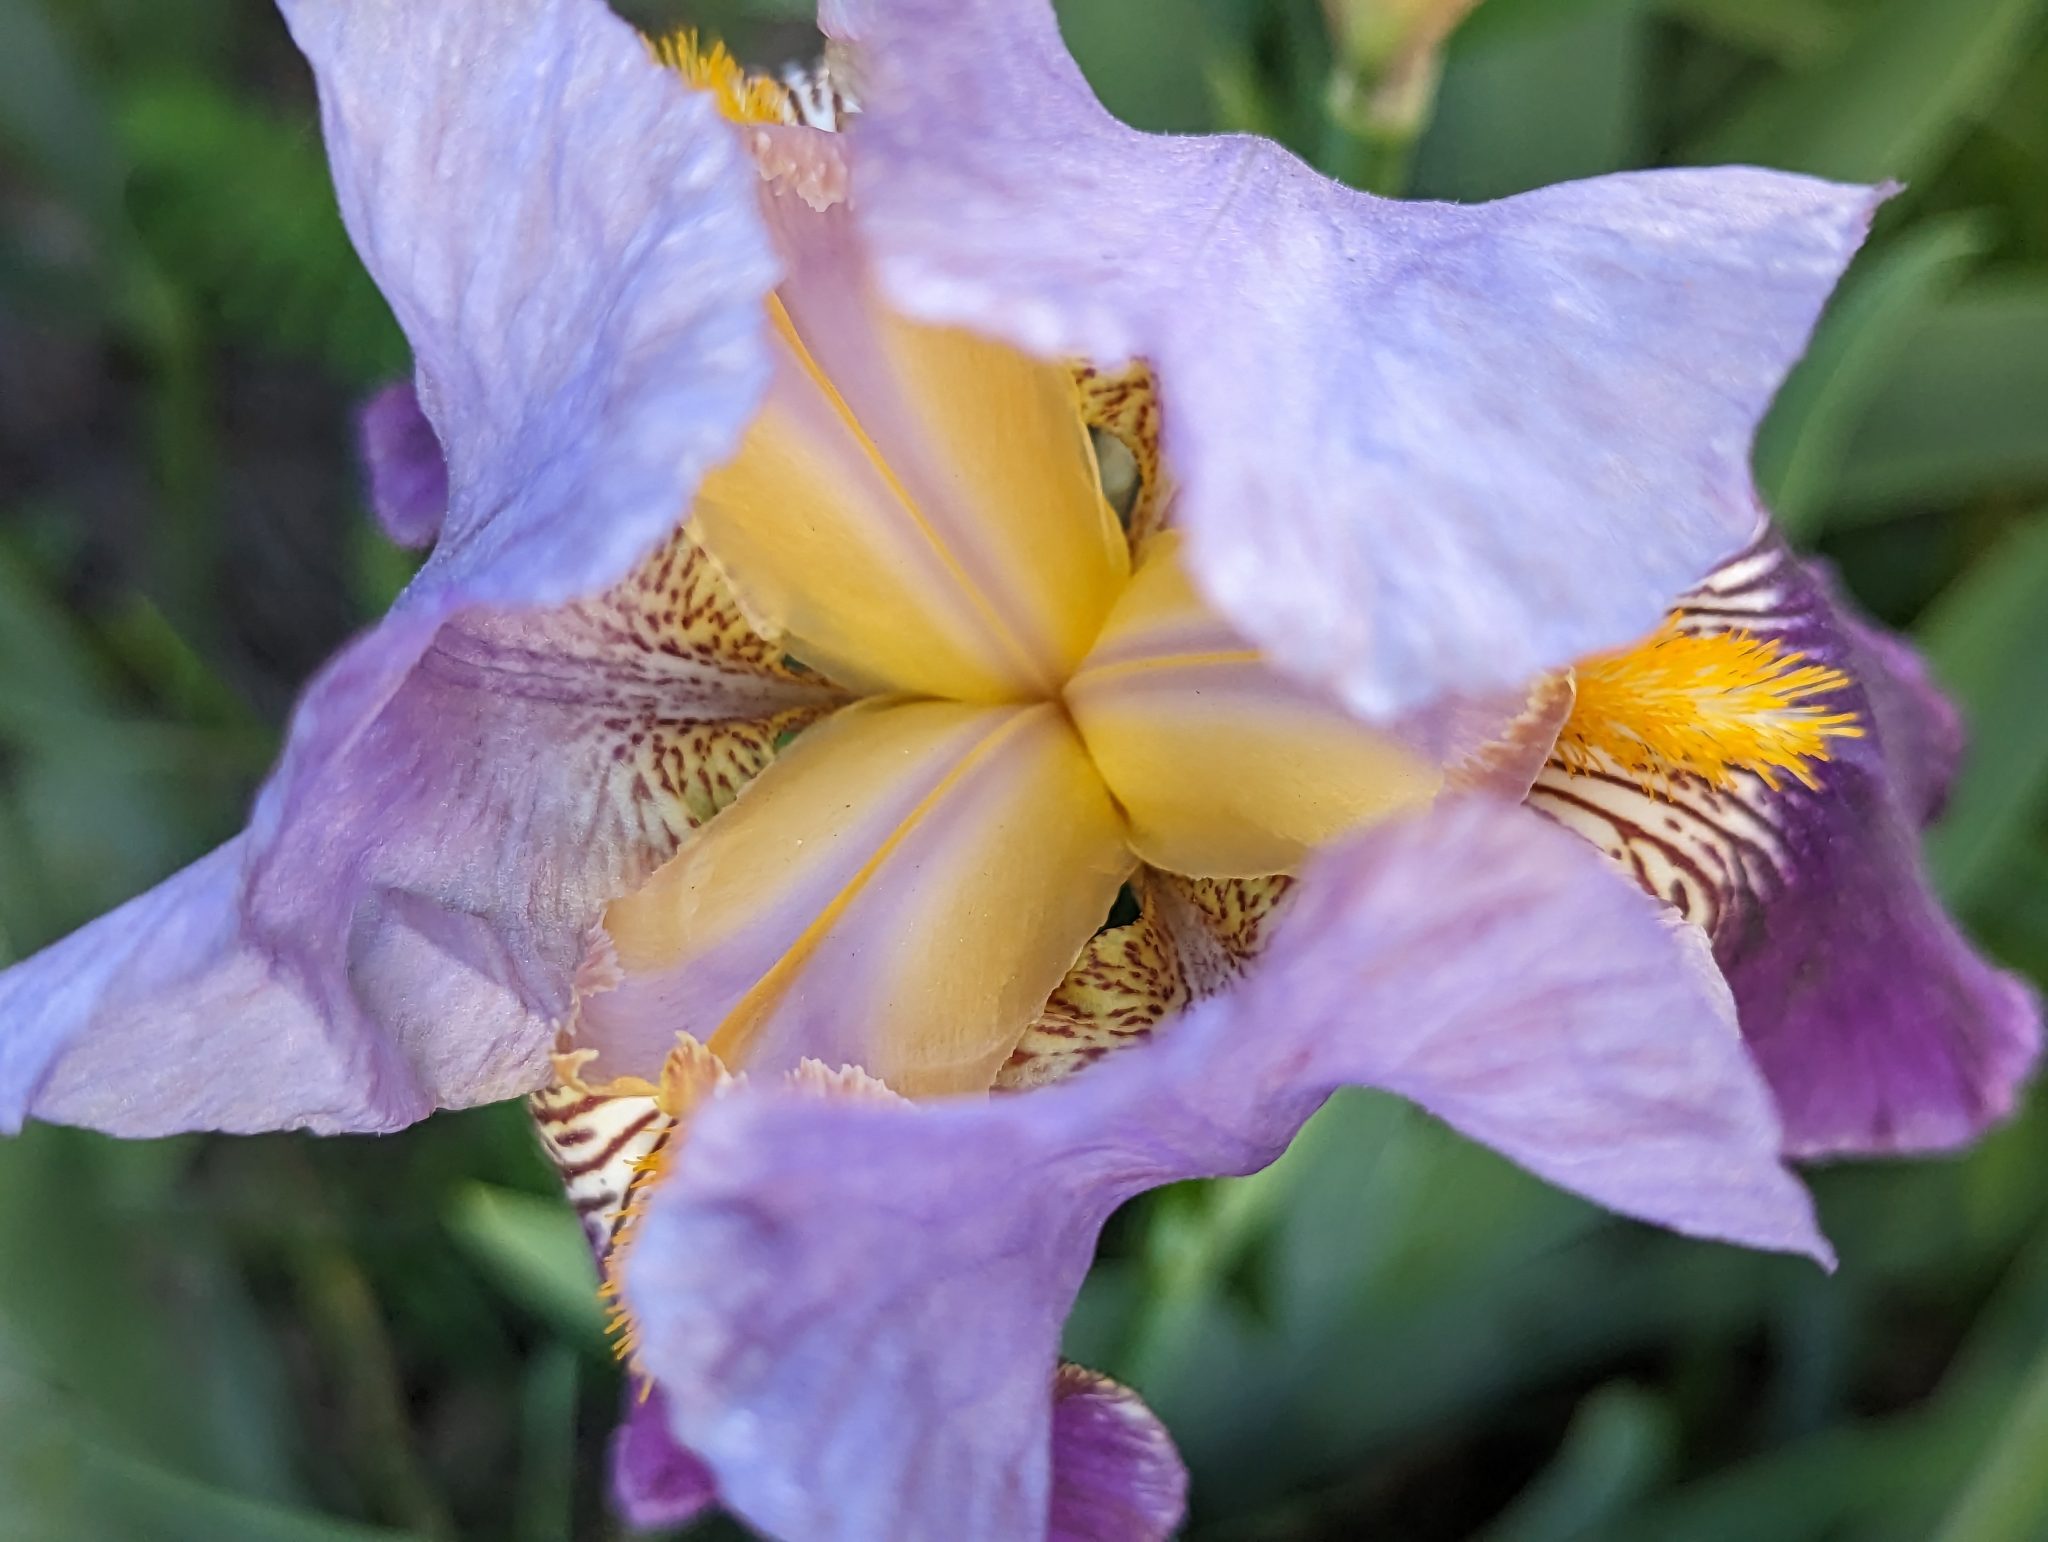 An iris flower seen from the top